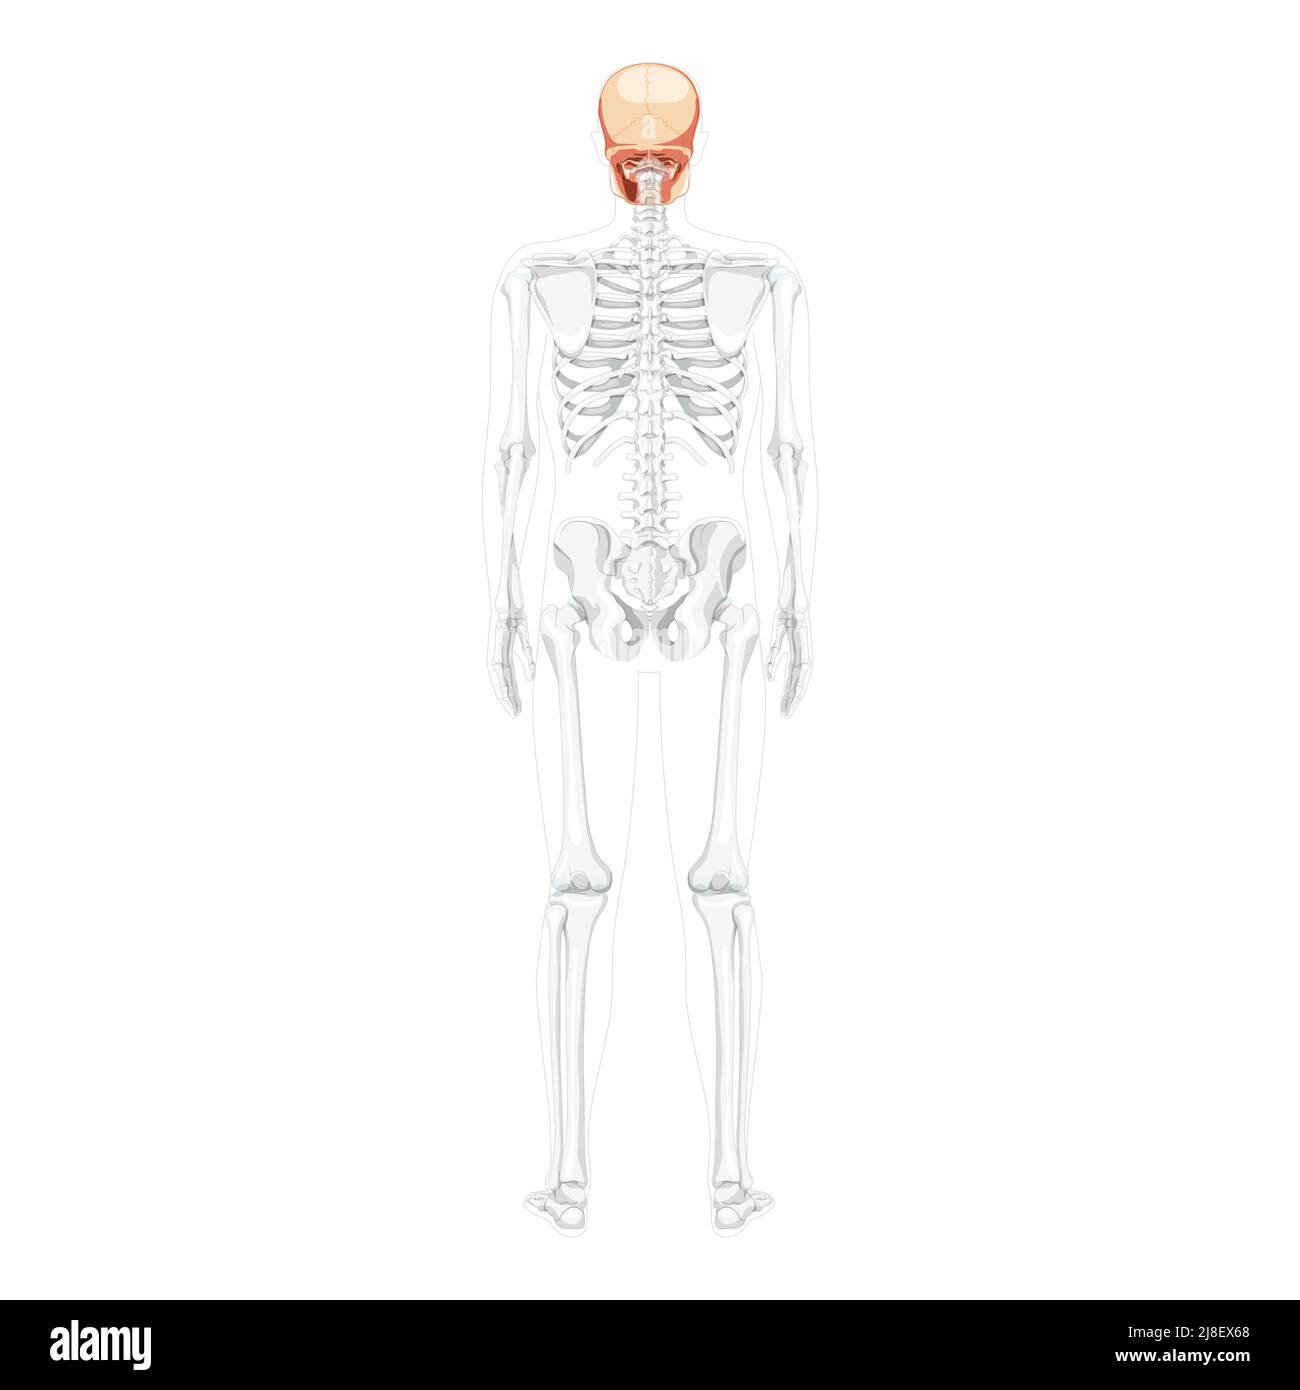 Tête humaine Skull Skeleton vue arrière avec les mains latérales partiellement transparente position du corps. Anatomiquement correct. Modèle réaliste et plat de couleur naturelle illustration vectorielle isolée sur fond blanc Illustration de Vecteur